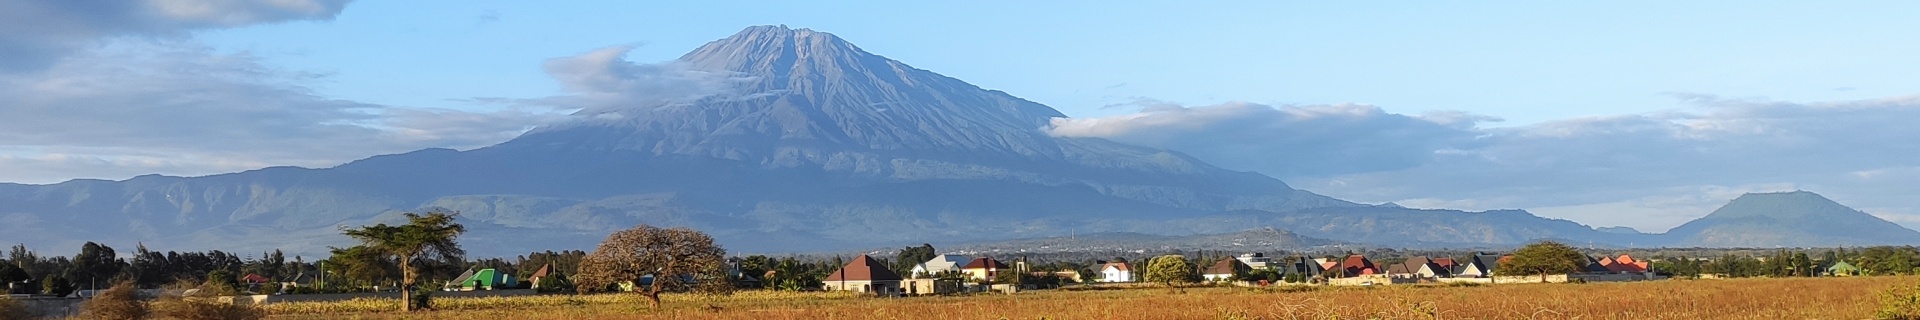 Blick auf den majestätischen Mount Meru aus Kisongo, in der Nähe des Flughafens Arusha